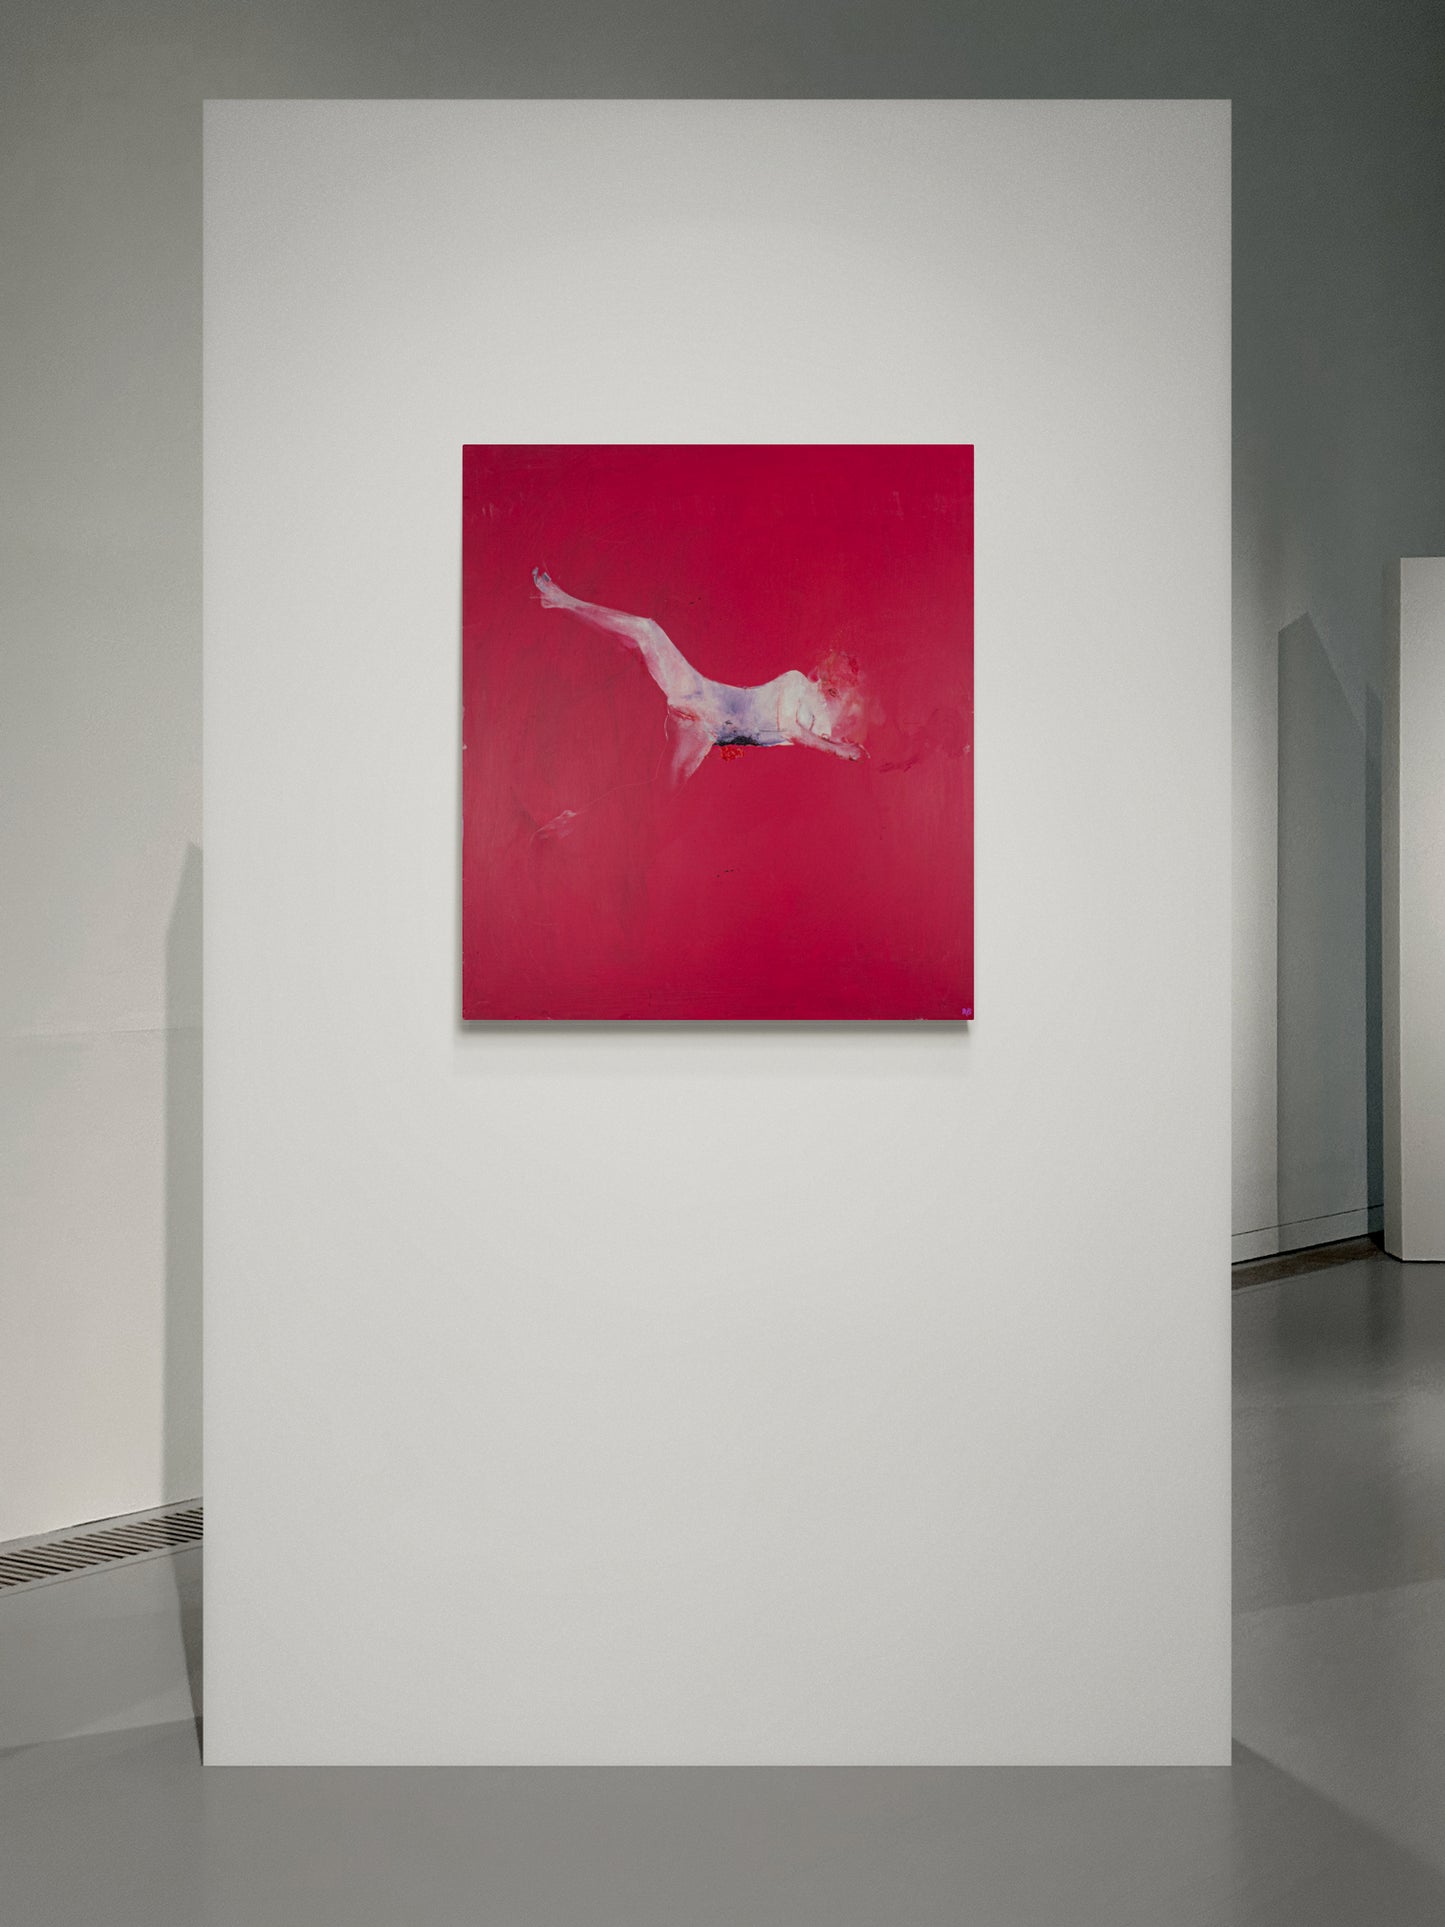 Renato Bertini - “Ricordo di Amburgo” (80 x 90 cm)